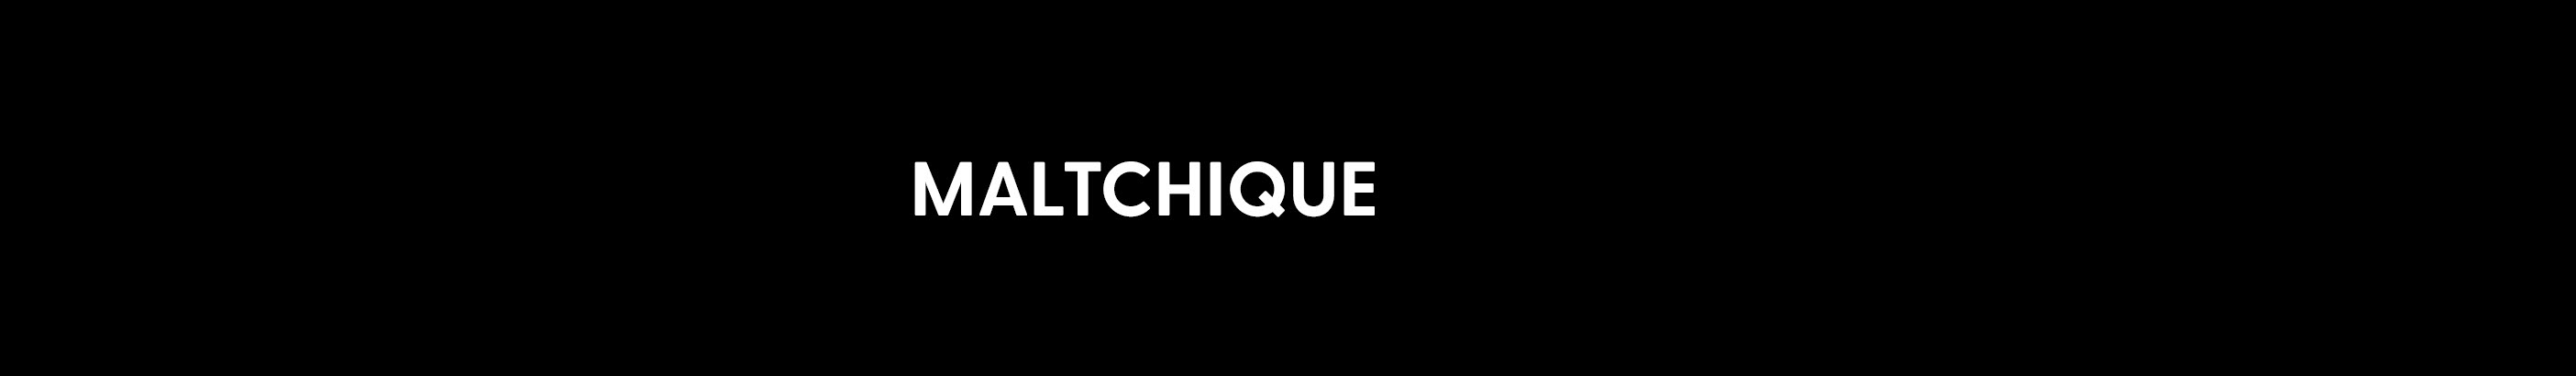 Maltchique .'s profile banner